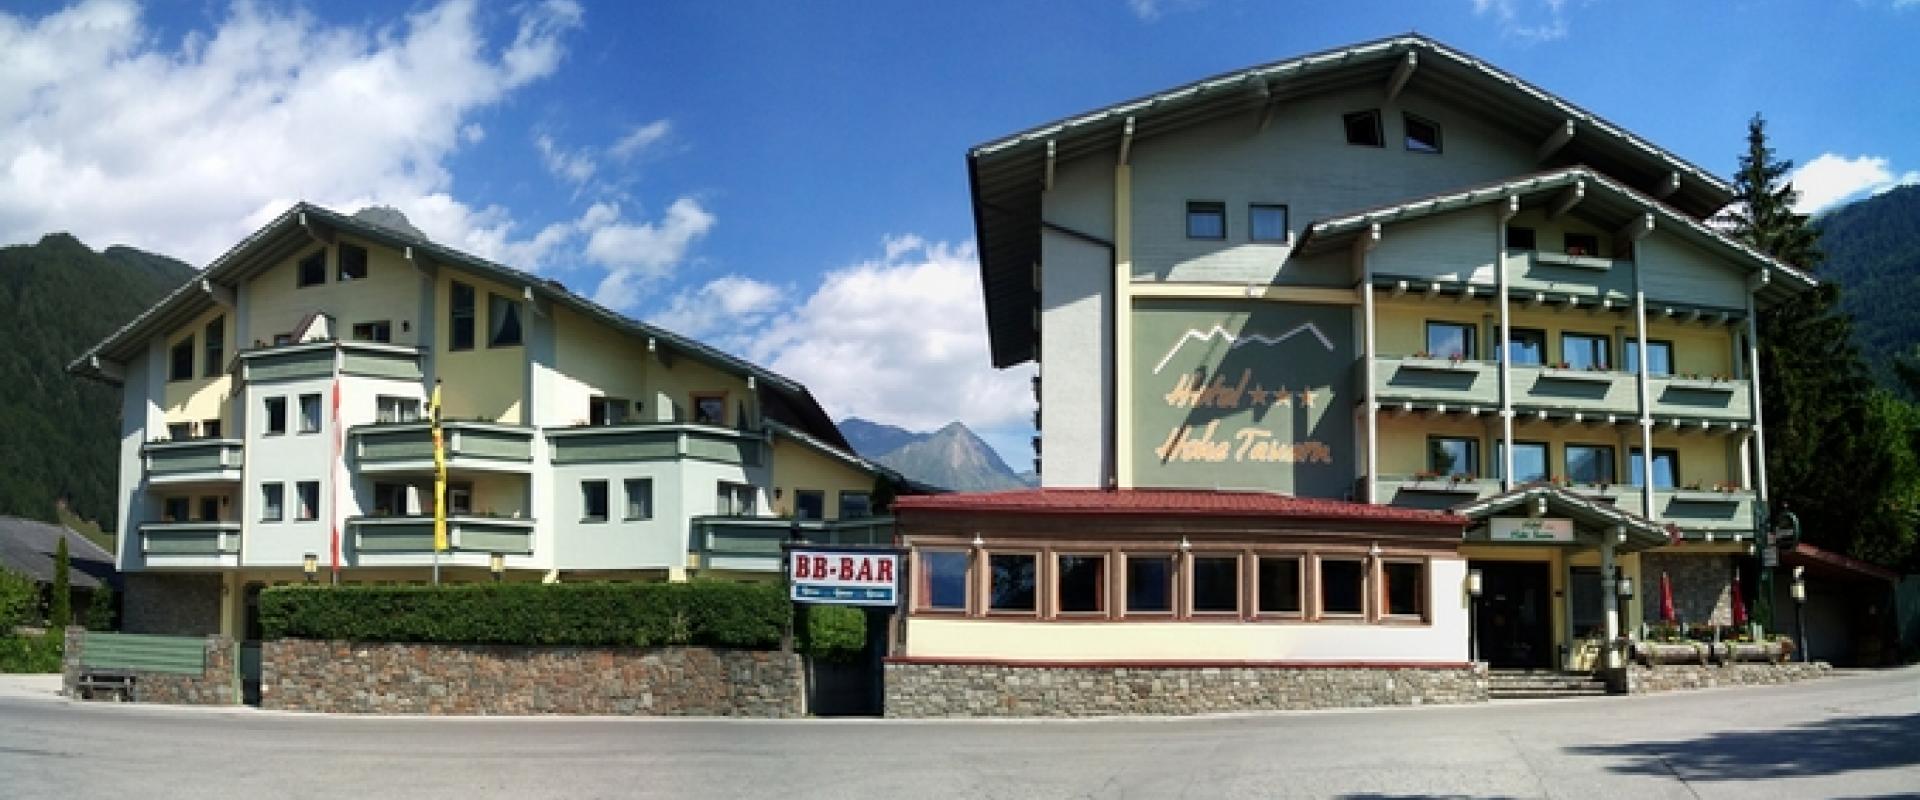 14779 Biker Hotel Hohe Tauern in Osttirol.jpg